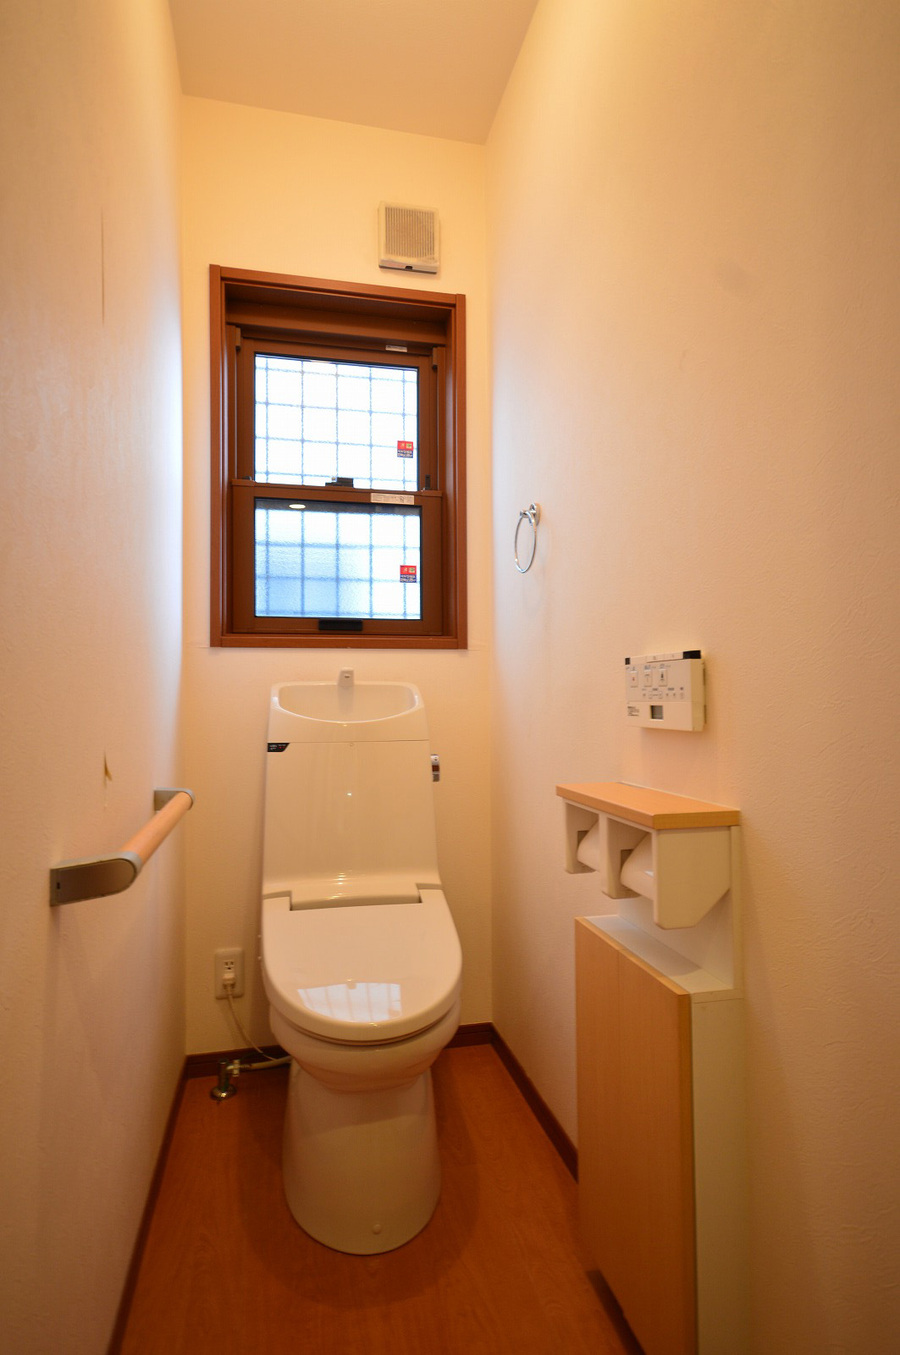 1Fトイレ　トイレットペーパーなどを収納出来るスペースもあります。